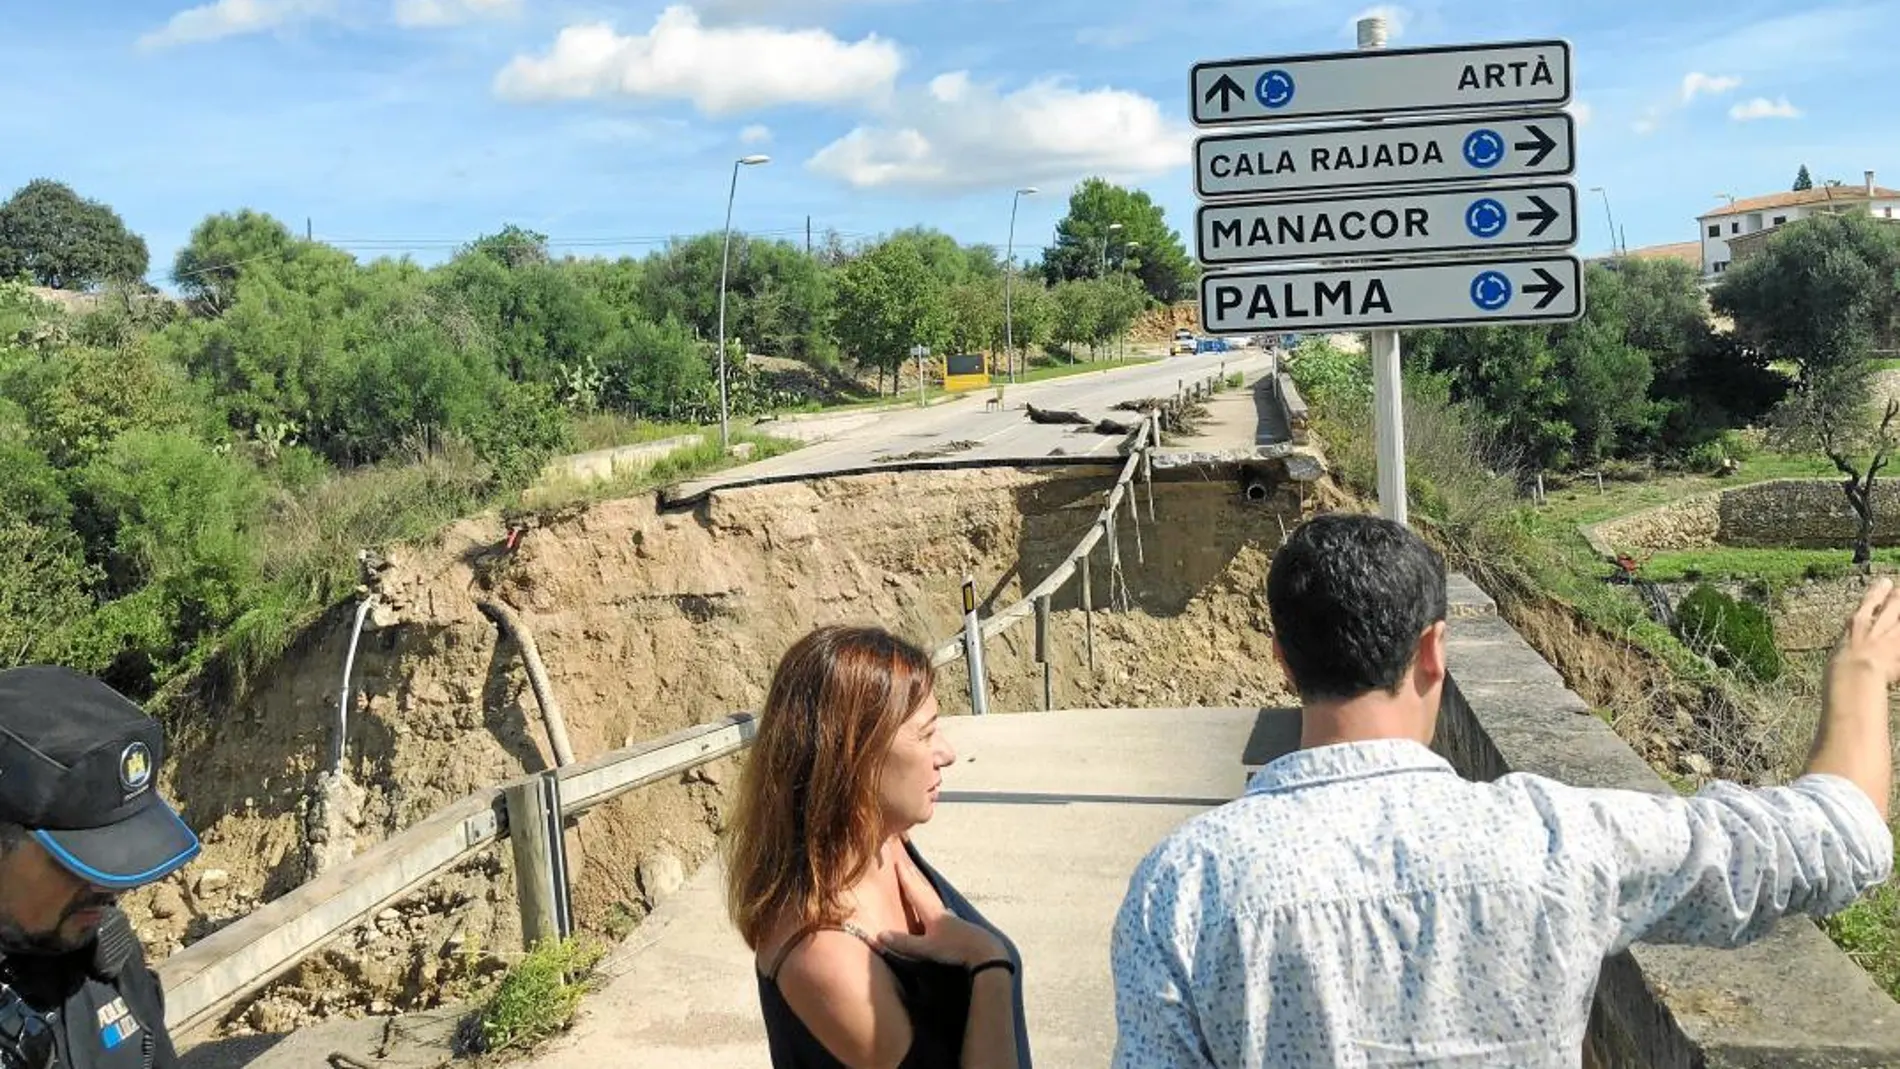 La presidenta de las Islas Baleares, Francina Armengol, visitó el puente de Artà, en estado catastrófico tras sufrir la fuerza de la riada